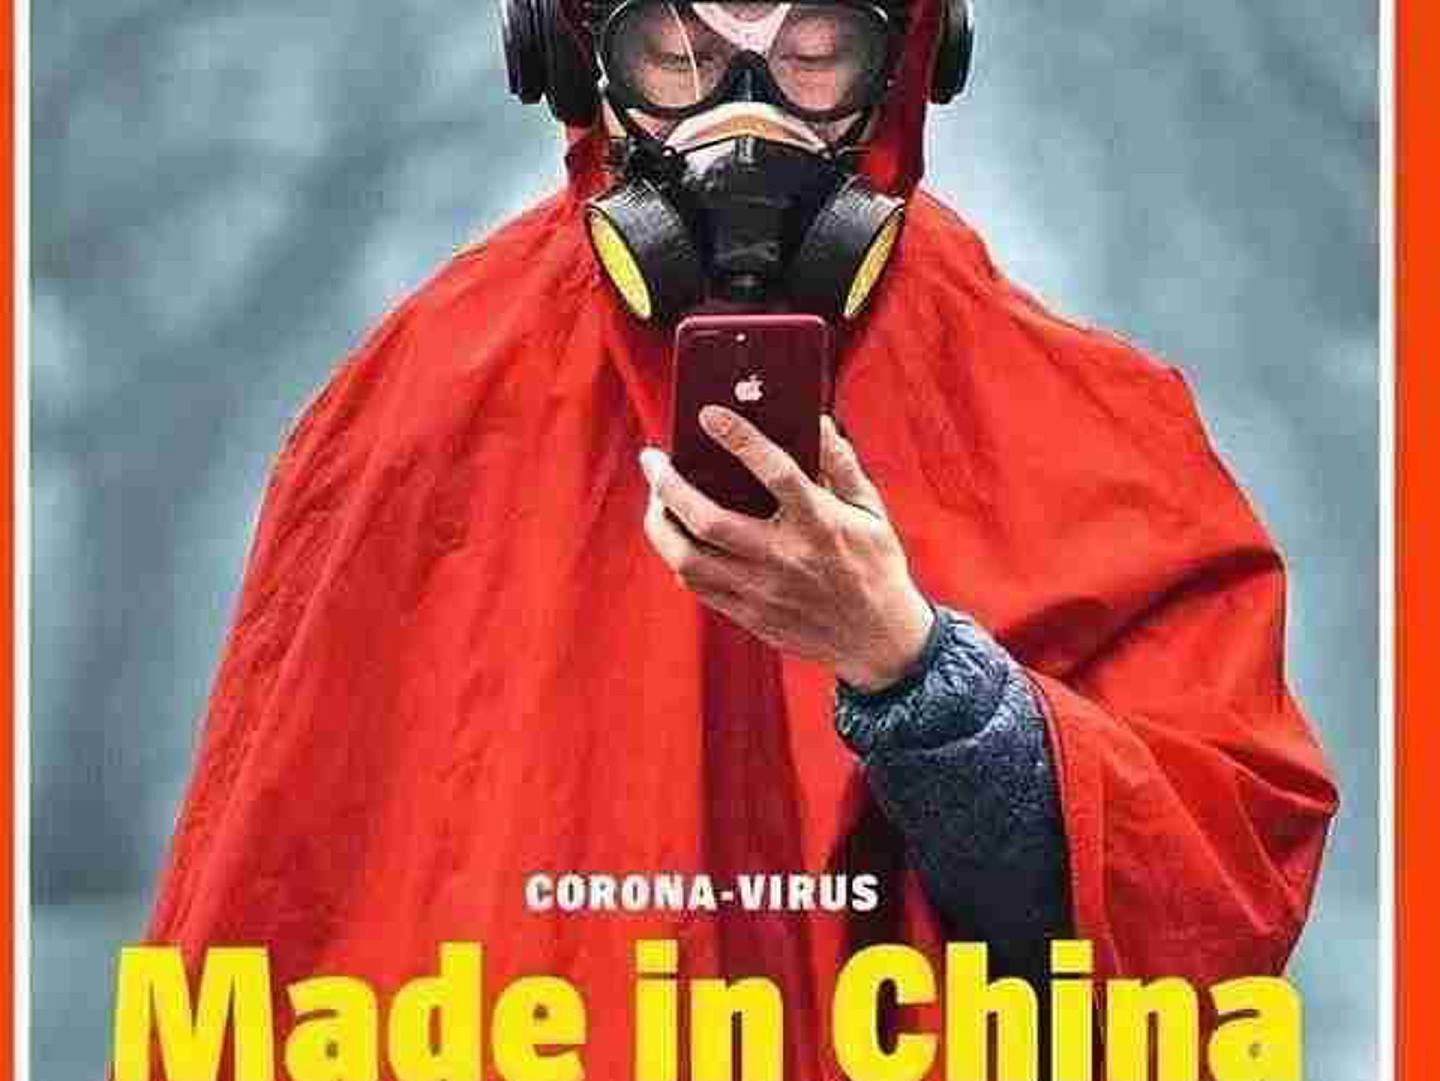 德国媒体称新冠病毒是中国制造。（微博@煮石山人2681901082）